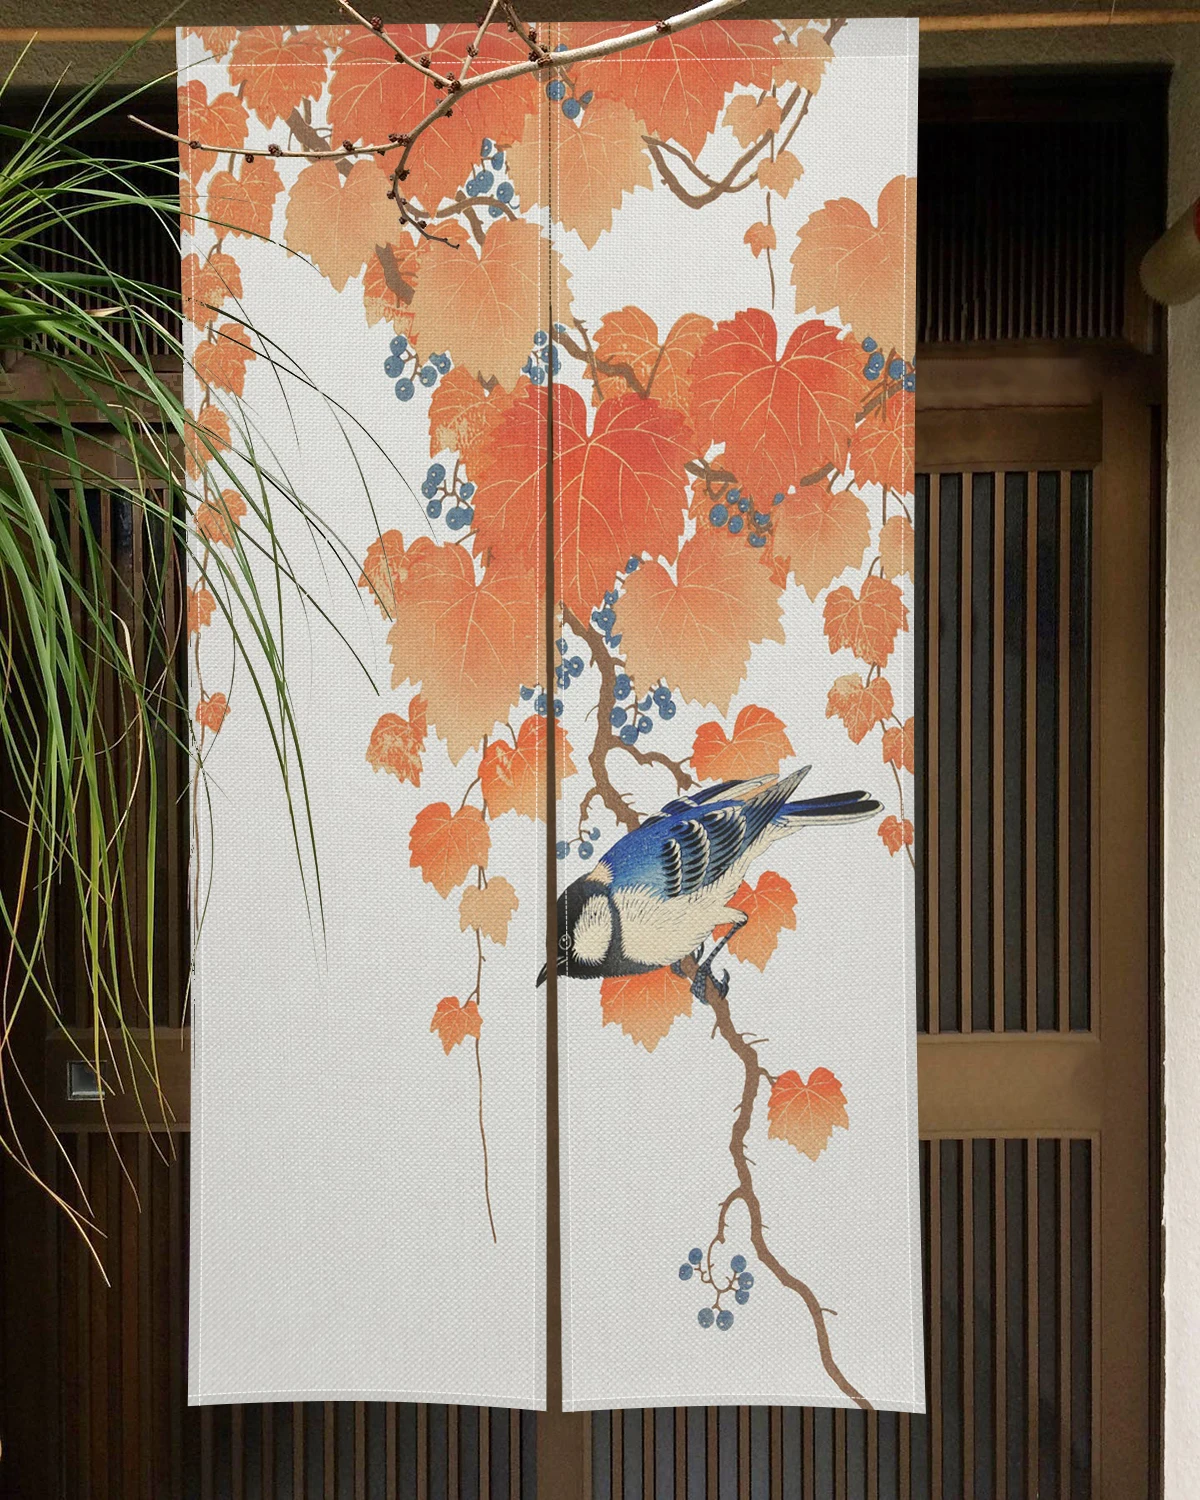 Hagyományos Kínai Virág Madarak Ajtó Függöny Japán Noren Ajtó Függöny Tusfestészet Nyomtatás Konyha Partíció Függöny